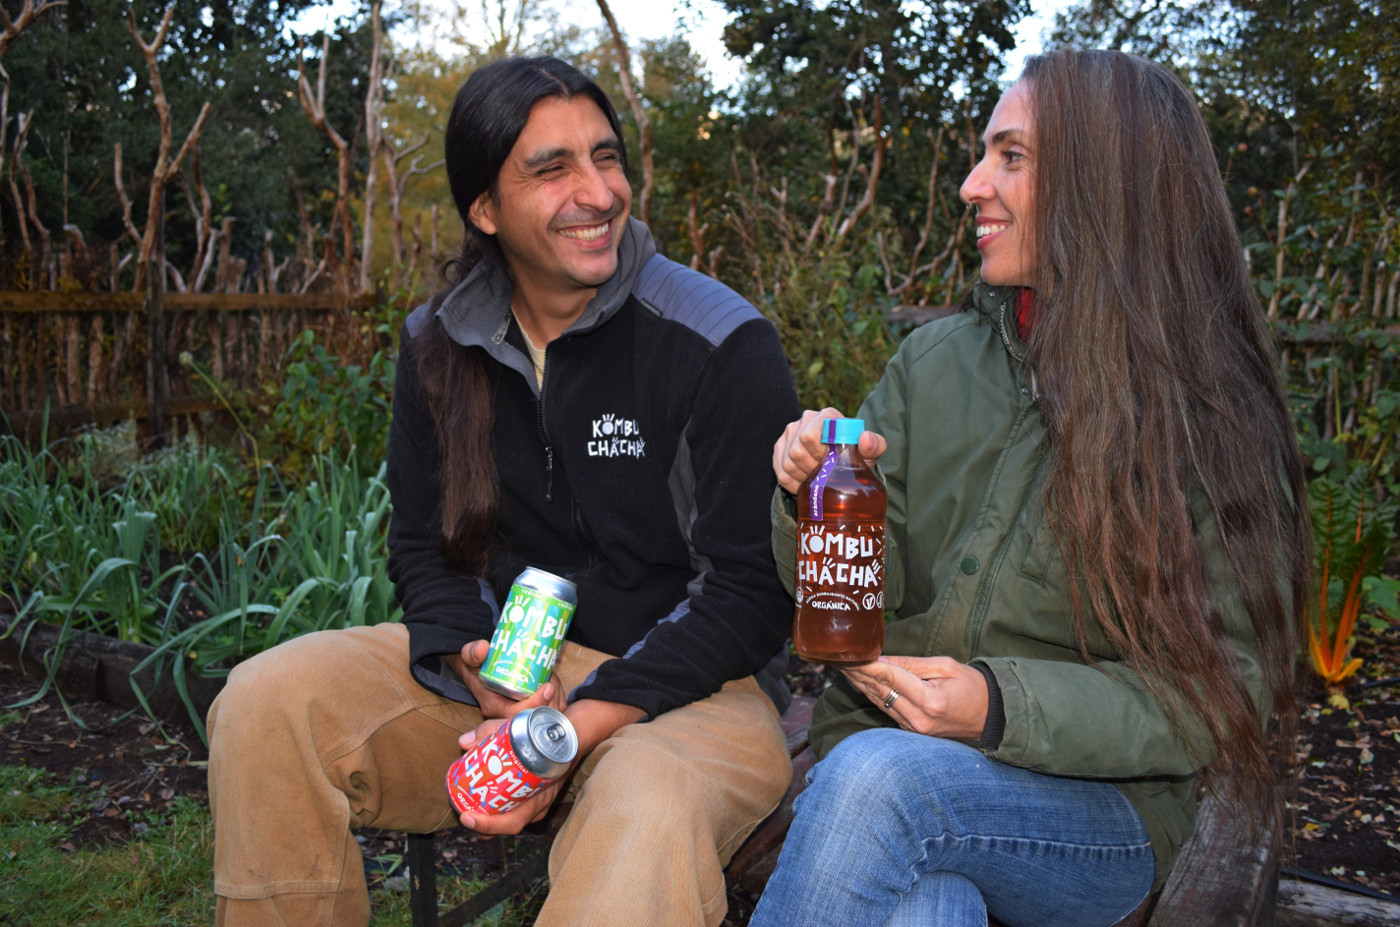 Maria Prieto und Antonio Sánchez Ihl wollen nicht nur ihre Kombucha verkaufen, sondern auch Veränderungen in der Lebensmittelproduktion anstoßen. Foto: Judith Mintrop